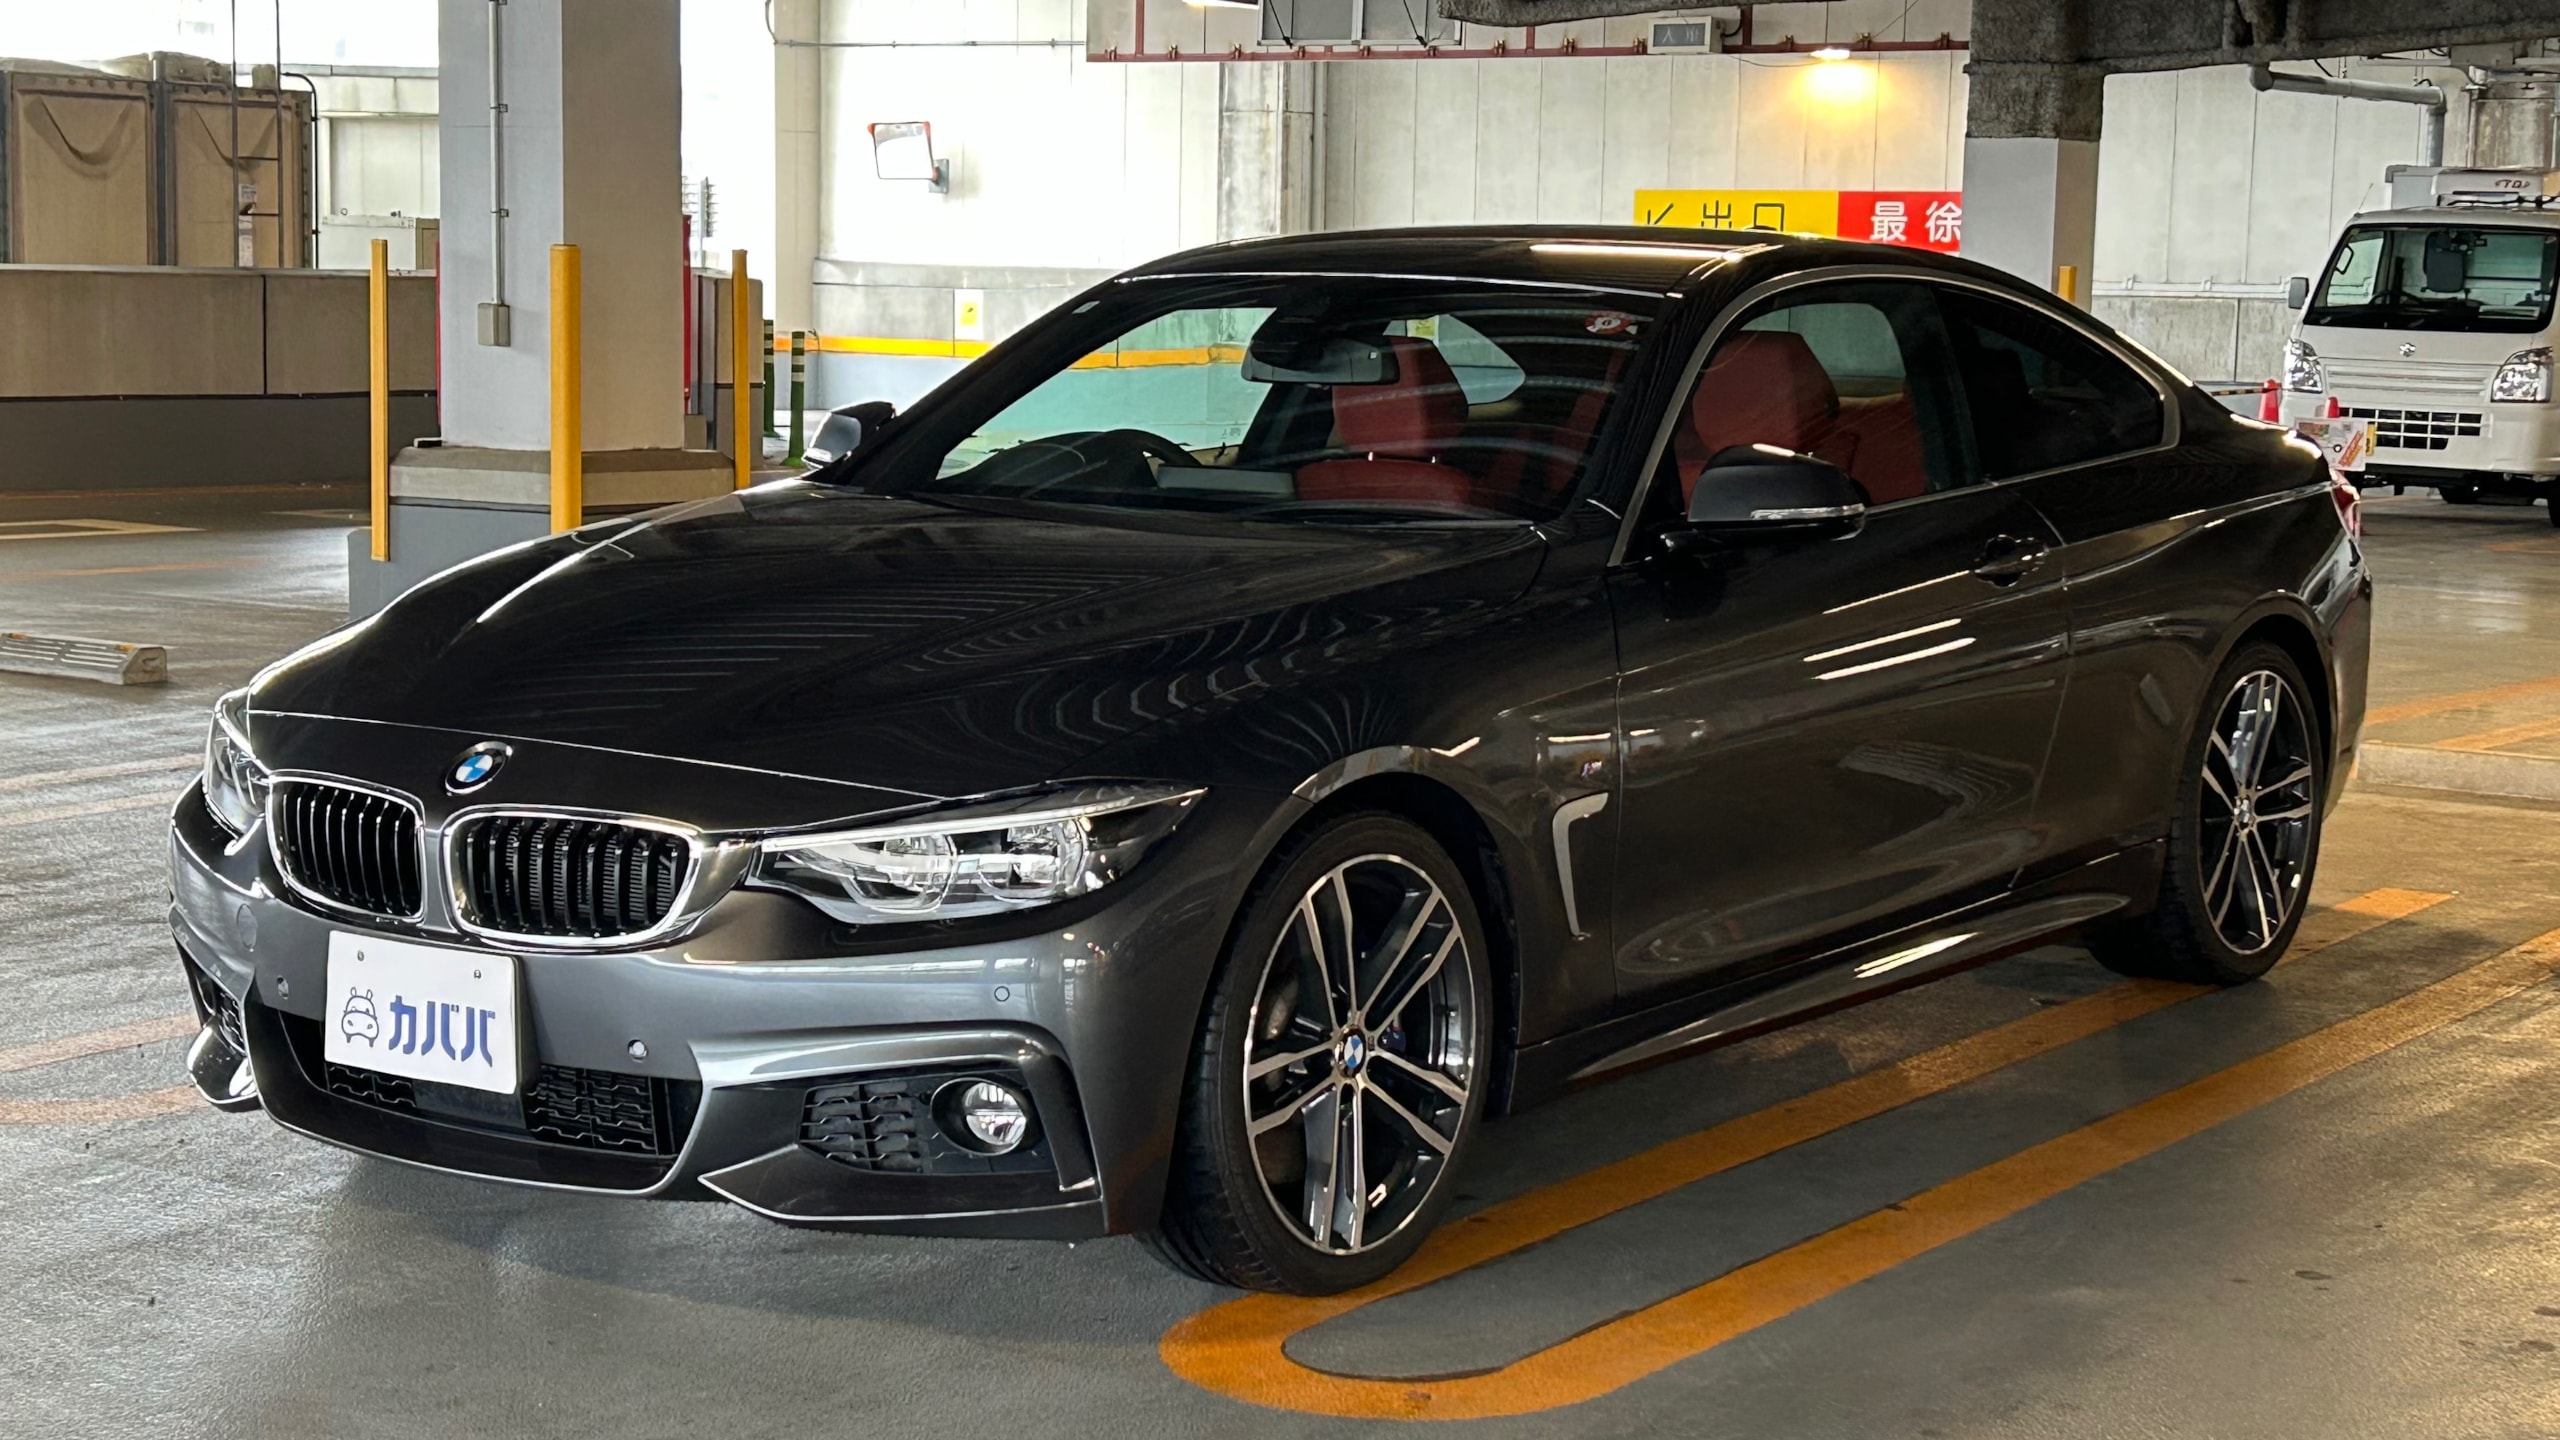 4シリーズ 440i クーペ Mスポーツ(BMW)2018年式 370万円の中古車